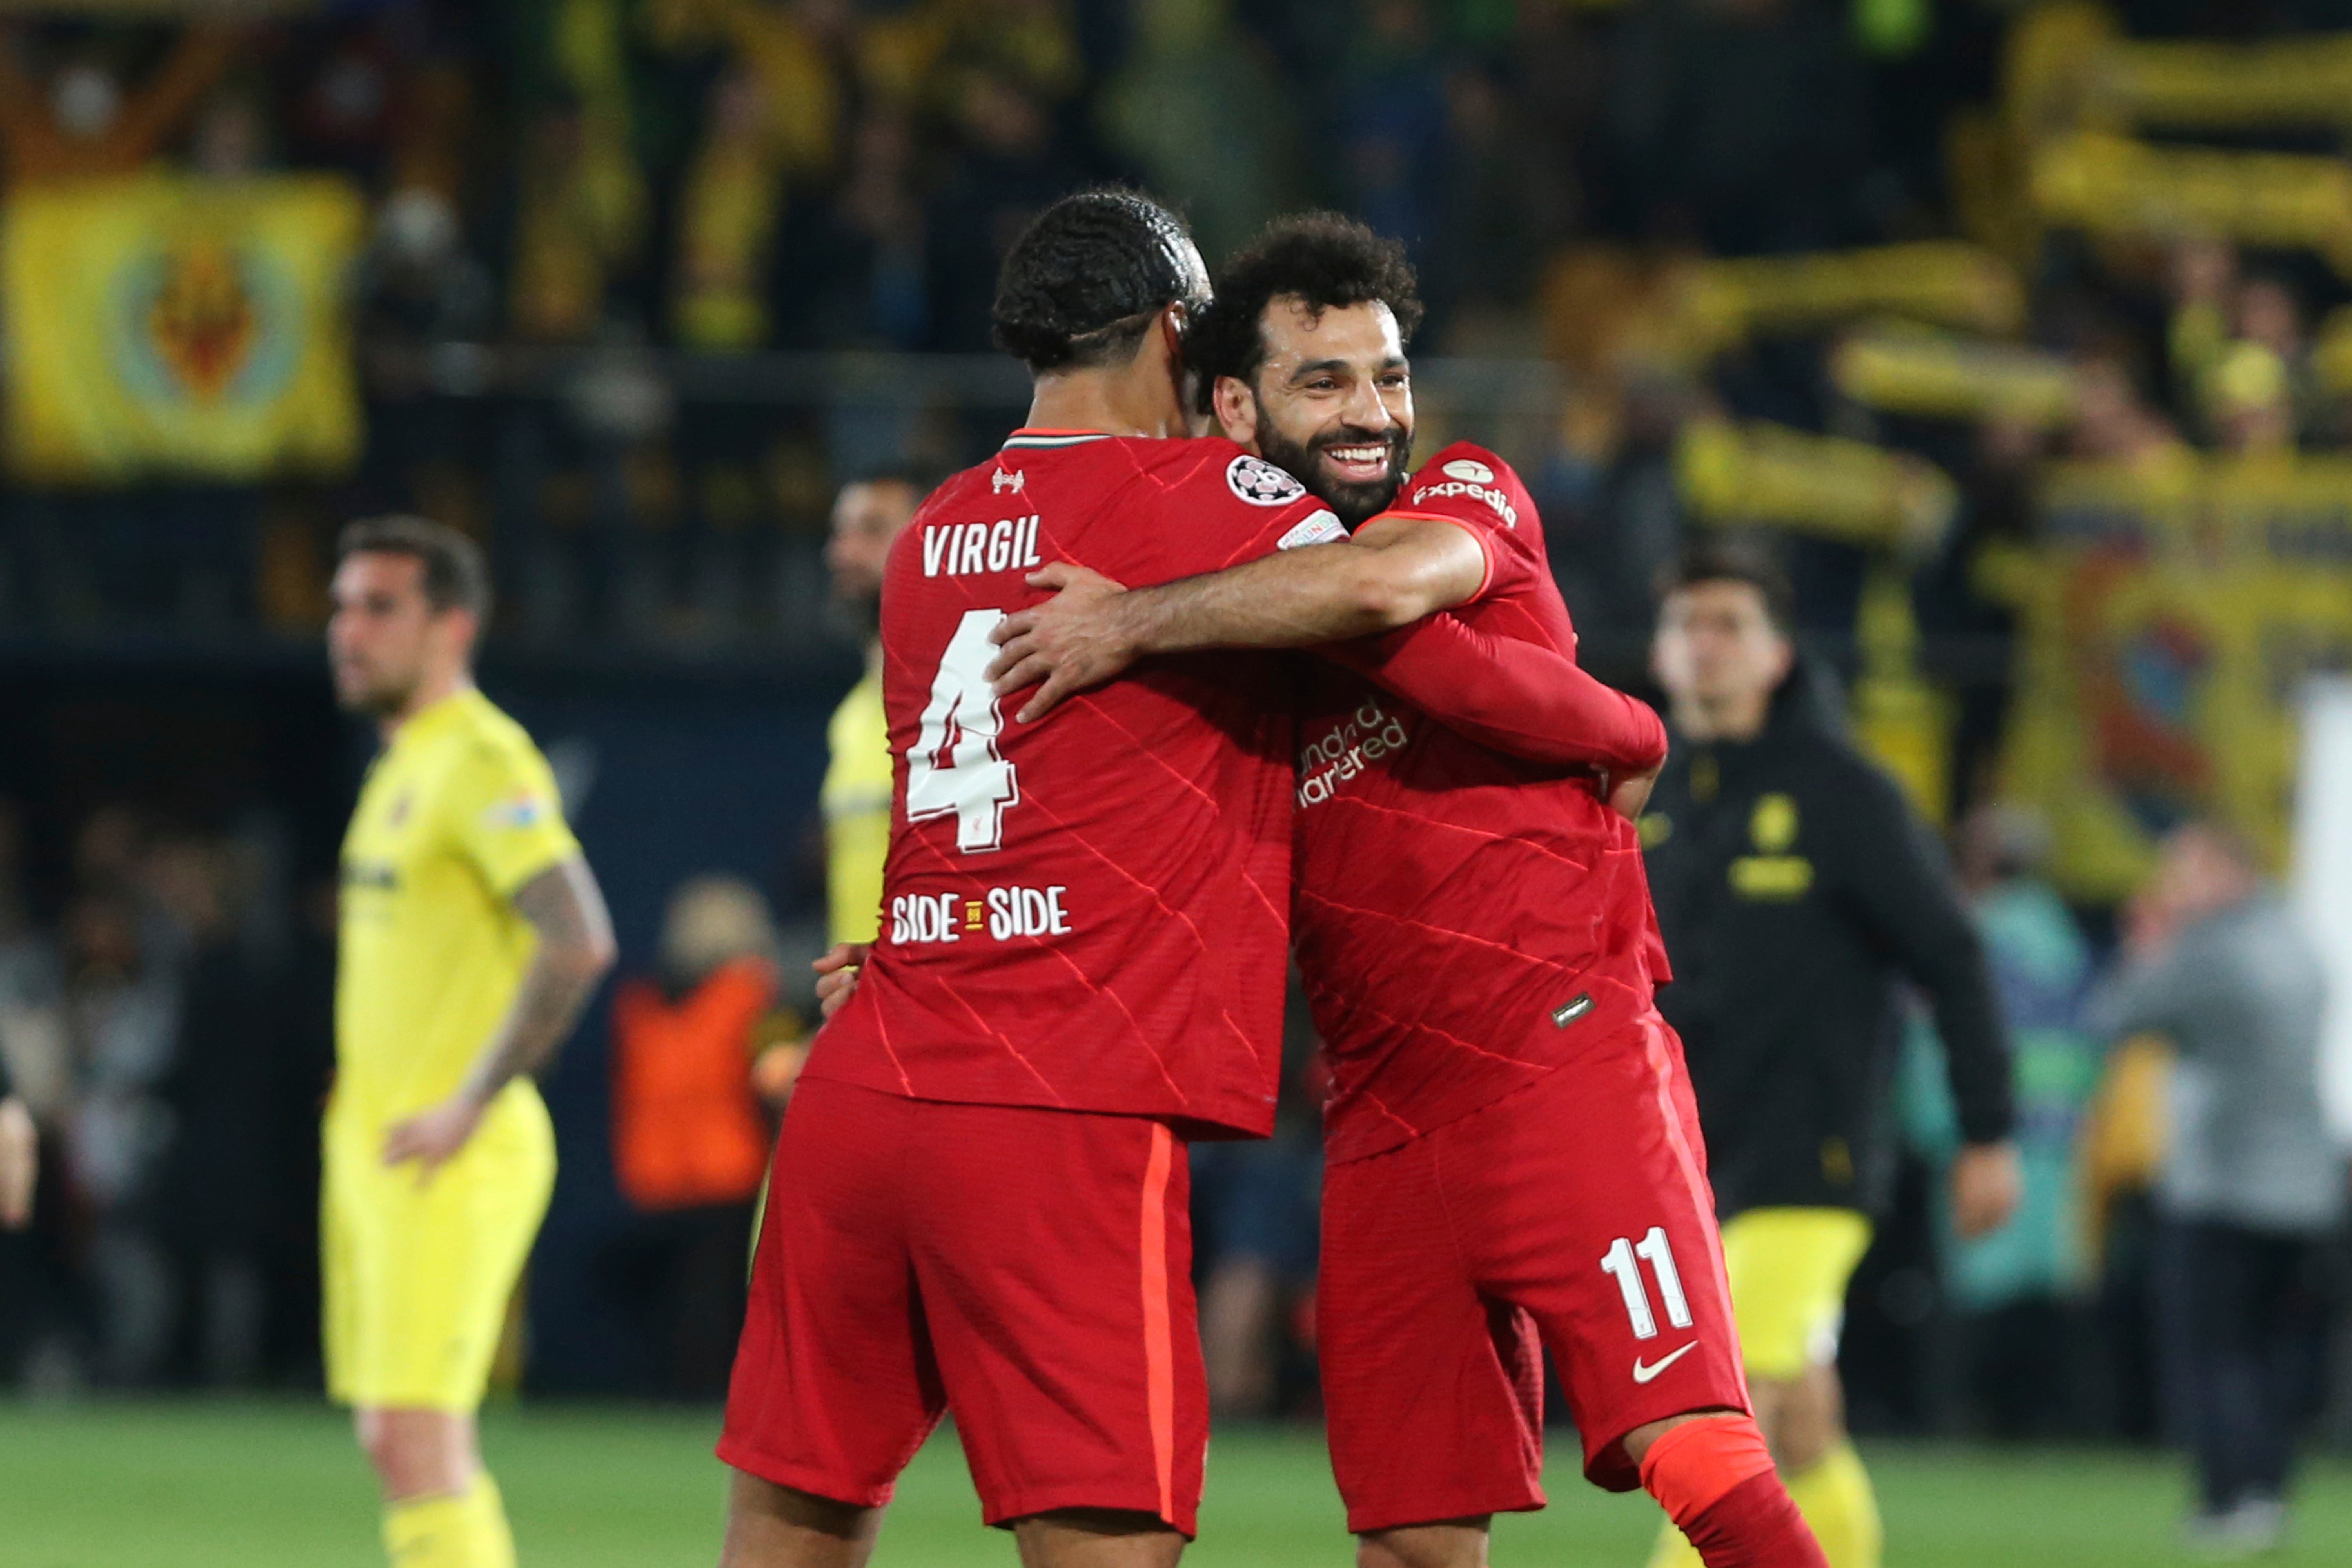 Virgil van Dijk and Mohamed Salah celebrate Tuesday’s dramatic win at the Ceramica stadium in Villarreal